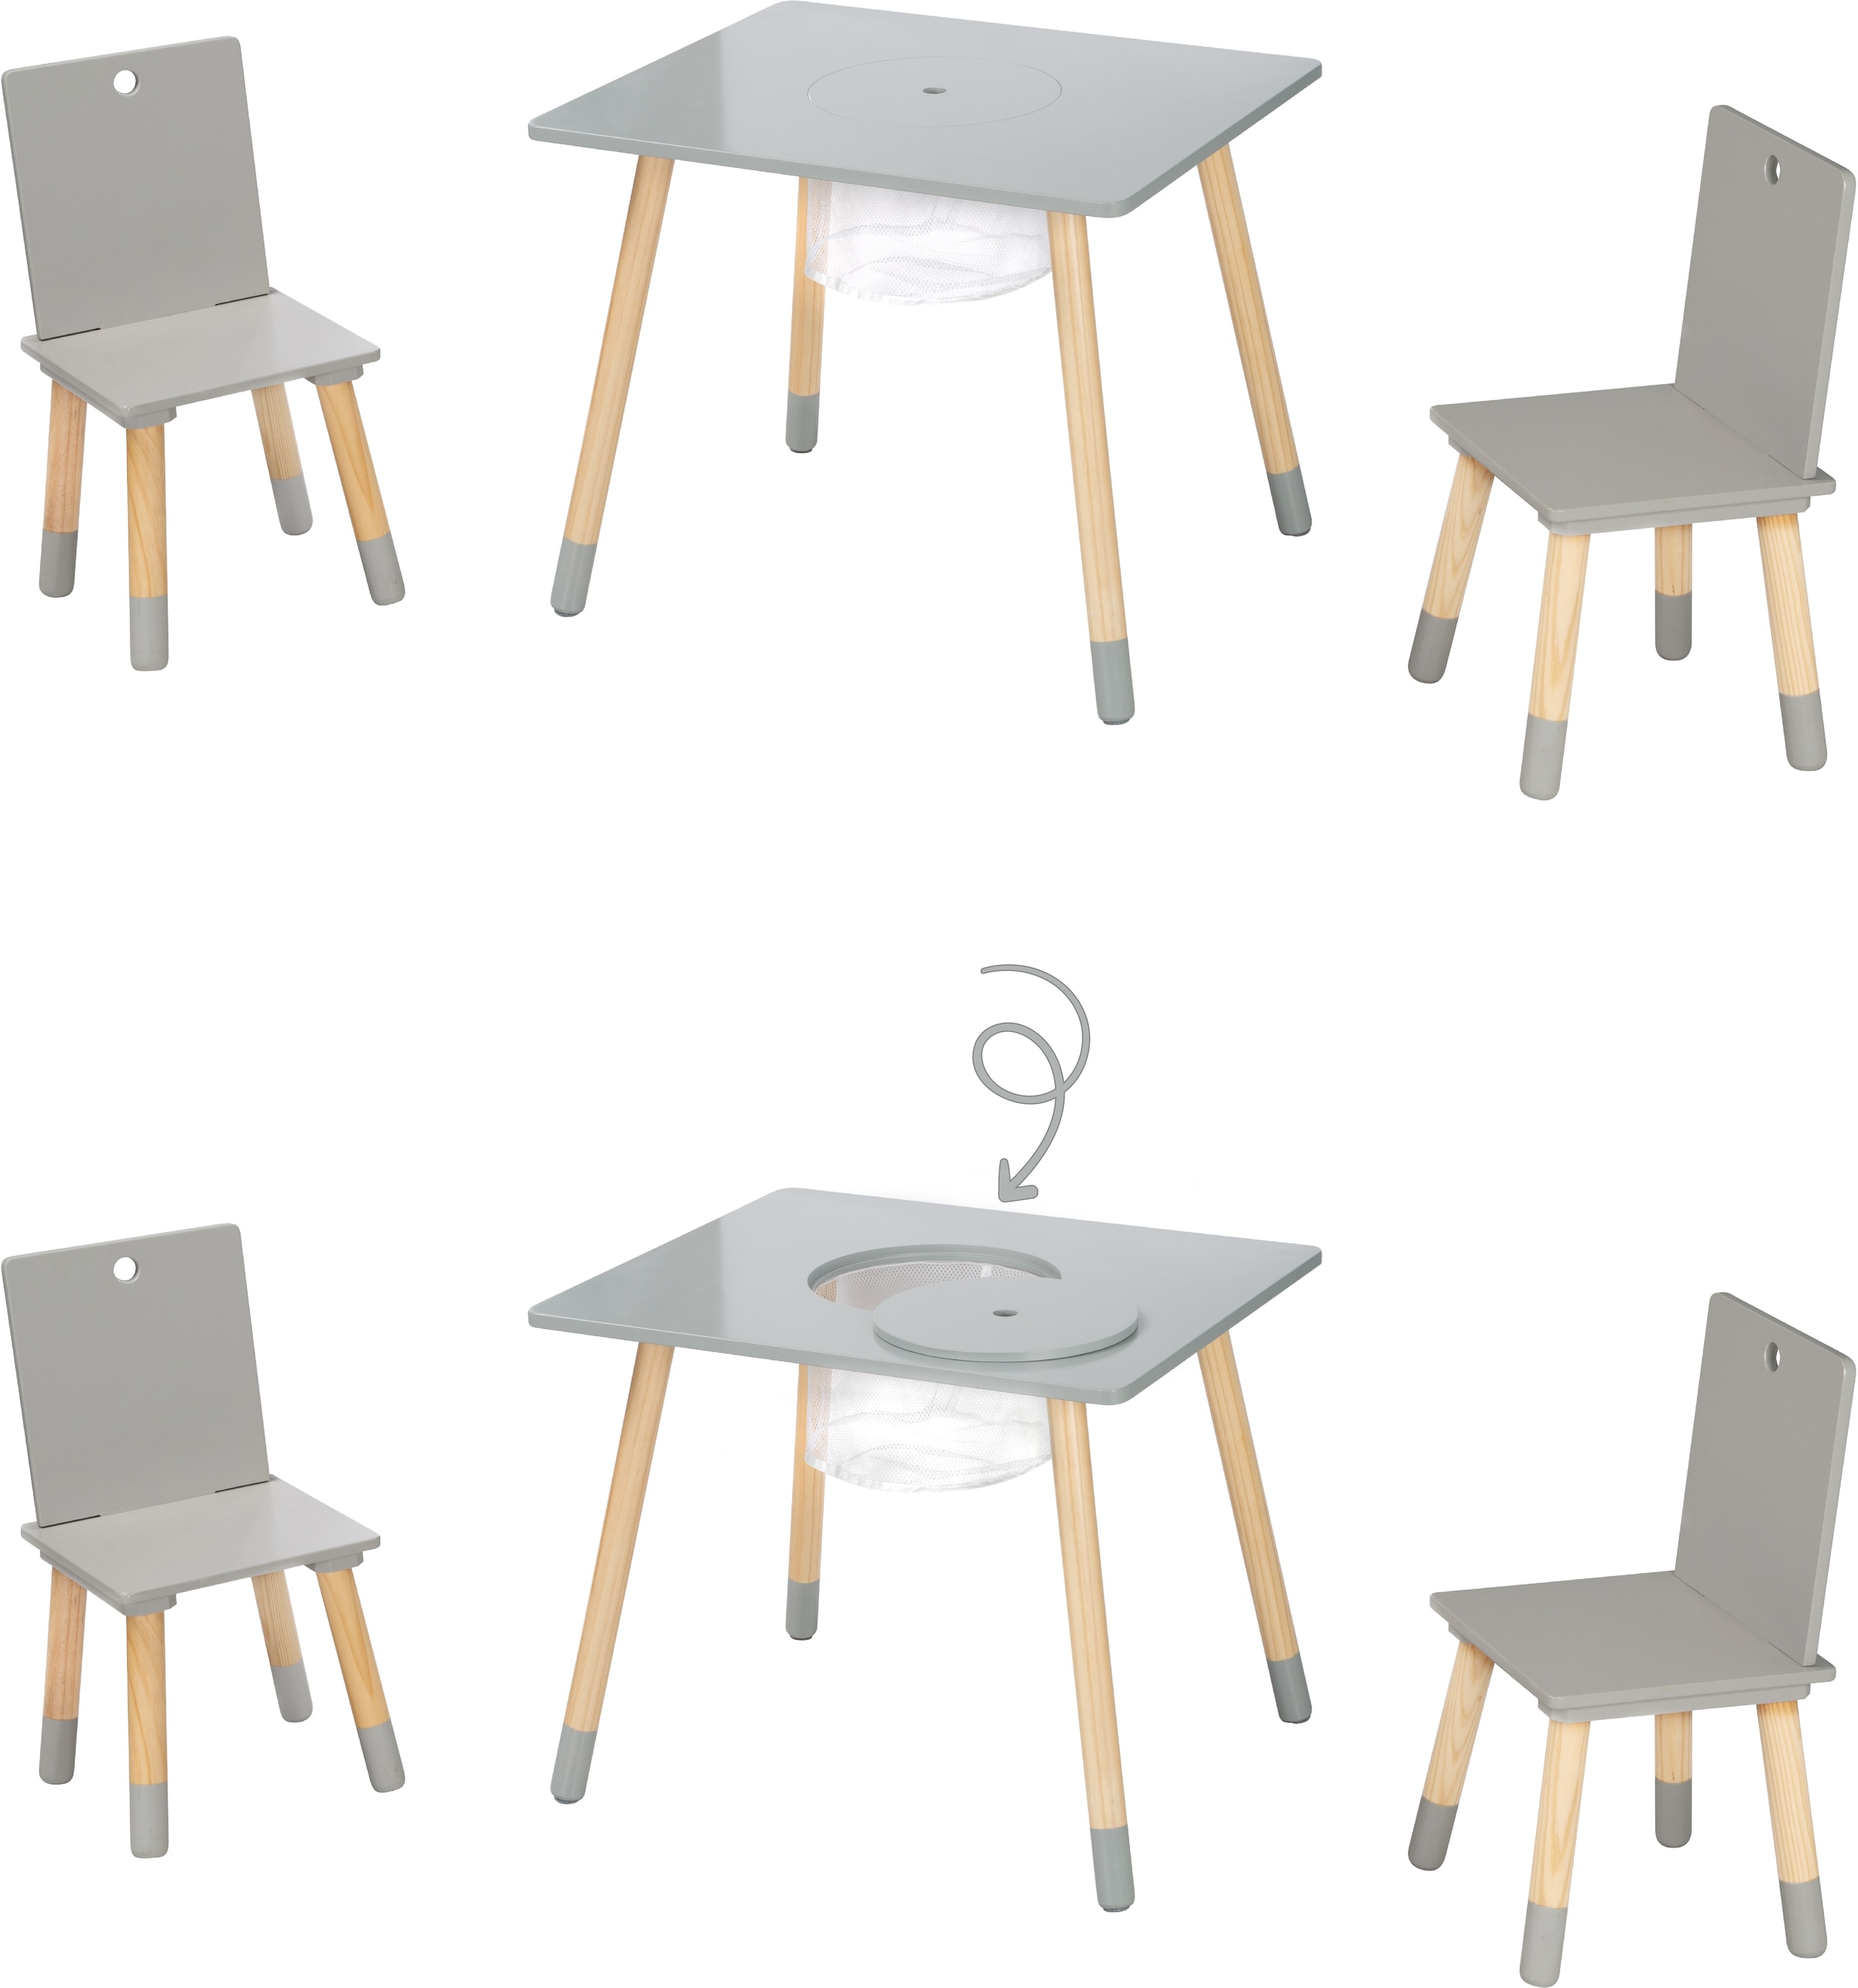 roba® Kindersitzgruppe »Sitzgruppe mit Aufbewahrungsnetz, grau«, aus Holz